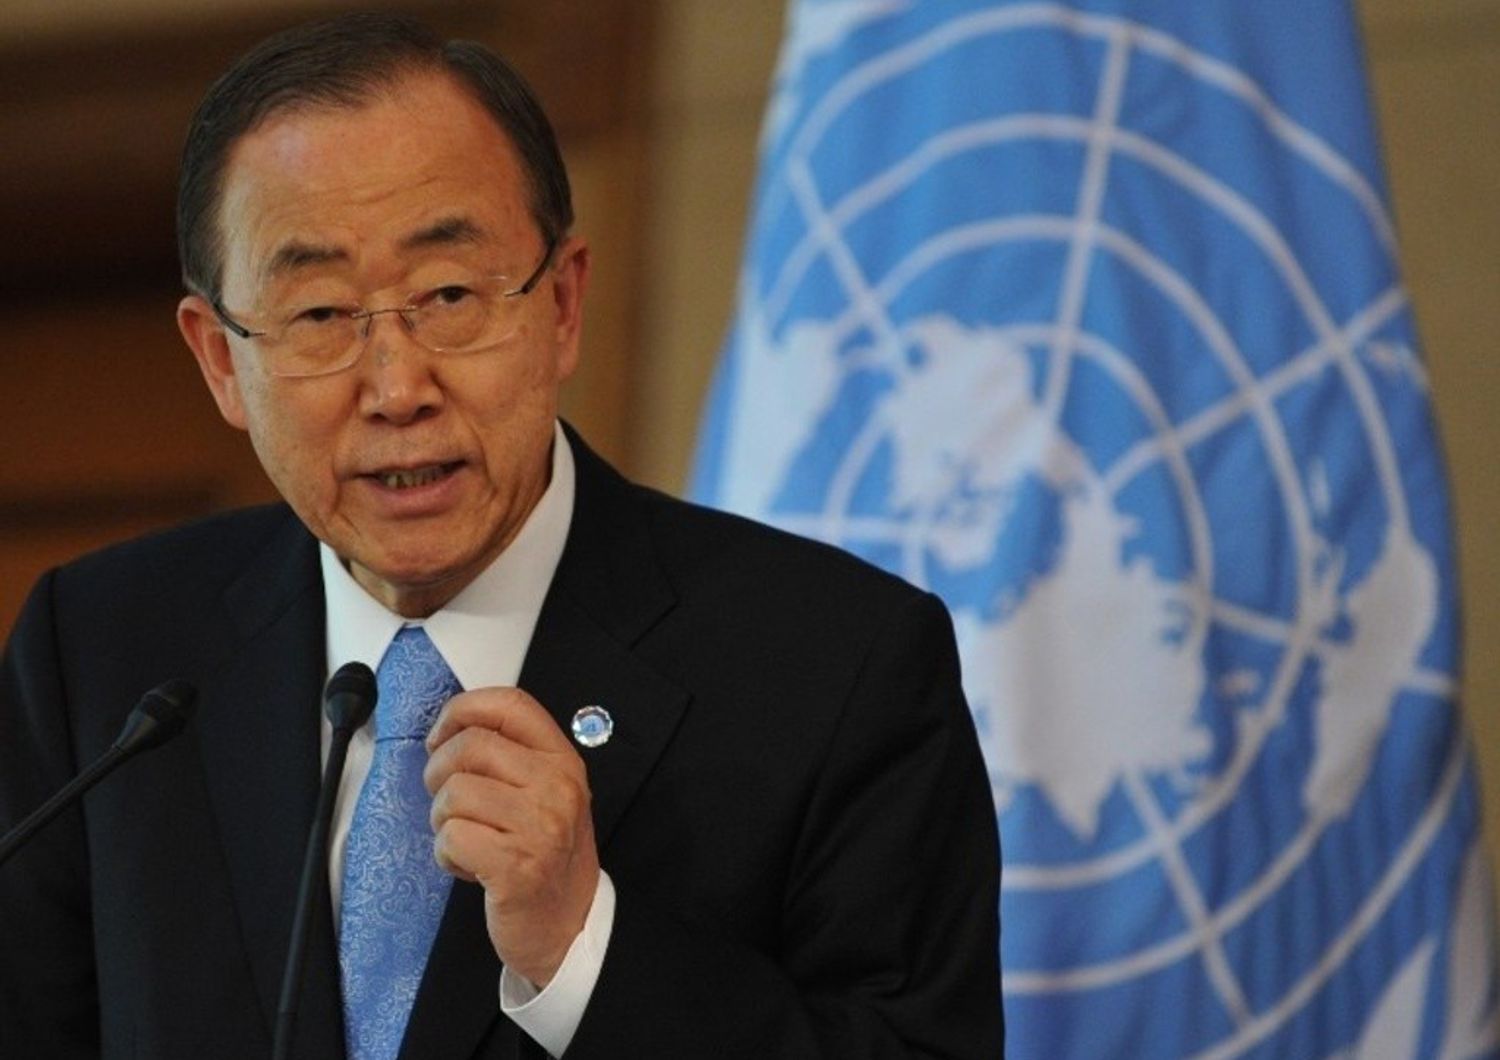 Siria: Ban Ki Moon, non esiste soluzione militare. "Europei facciano di piu' per profughi"